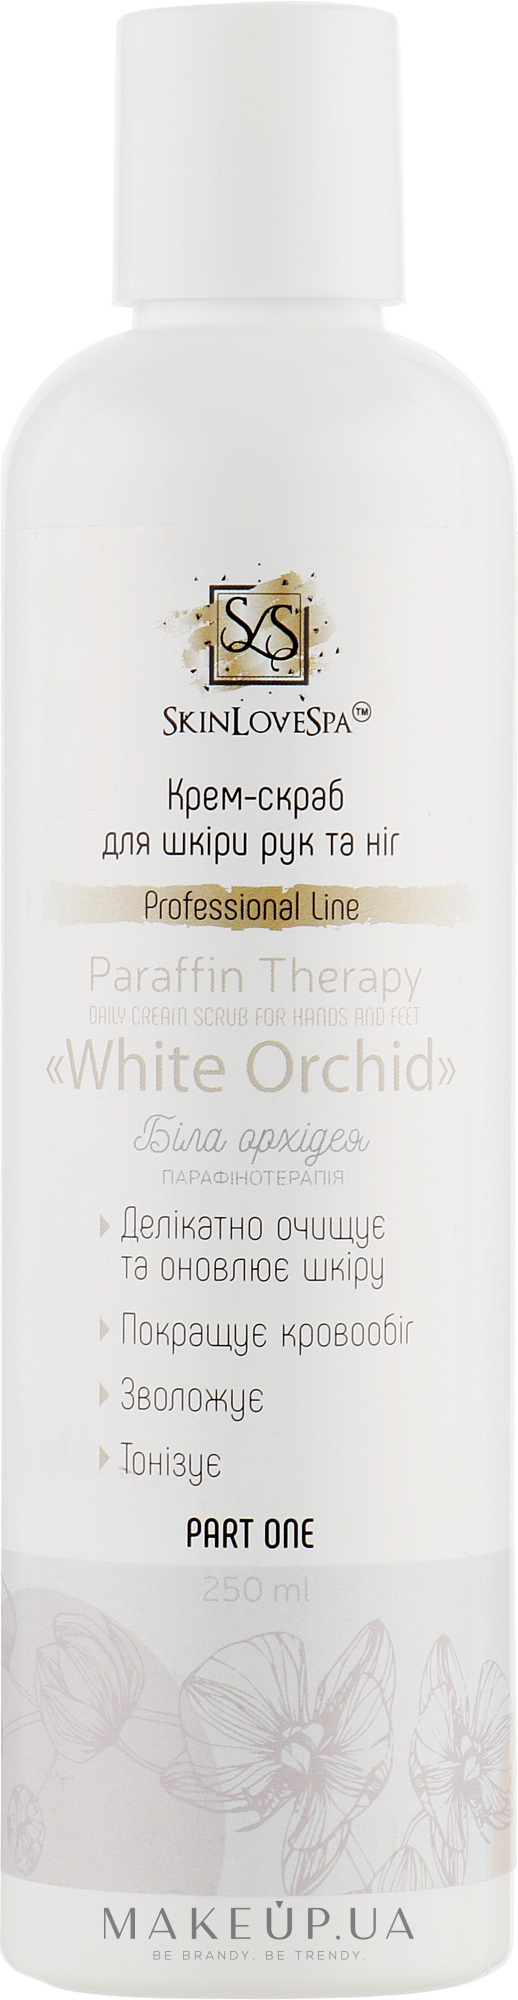 Крем-скраб для шкіри рук і ніг "White Orhid" - SkinLoveSpa Paraffin Therapy — фото 250ml